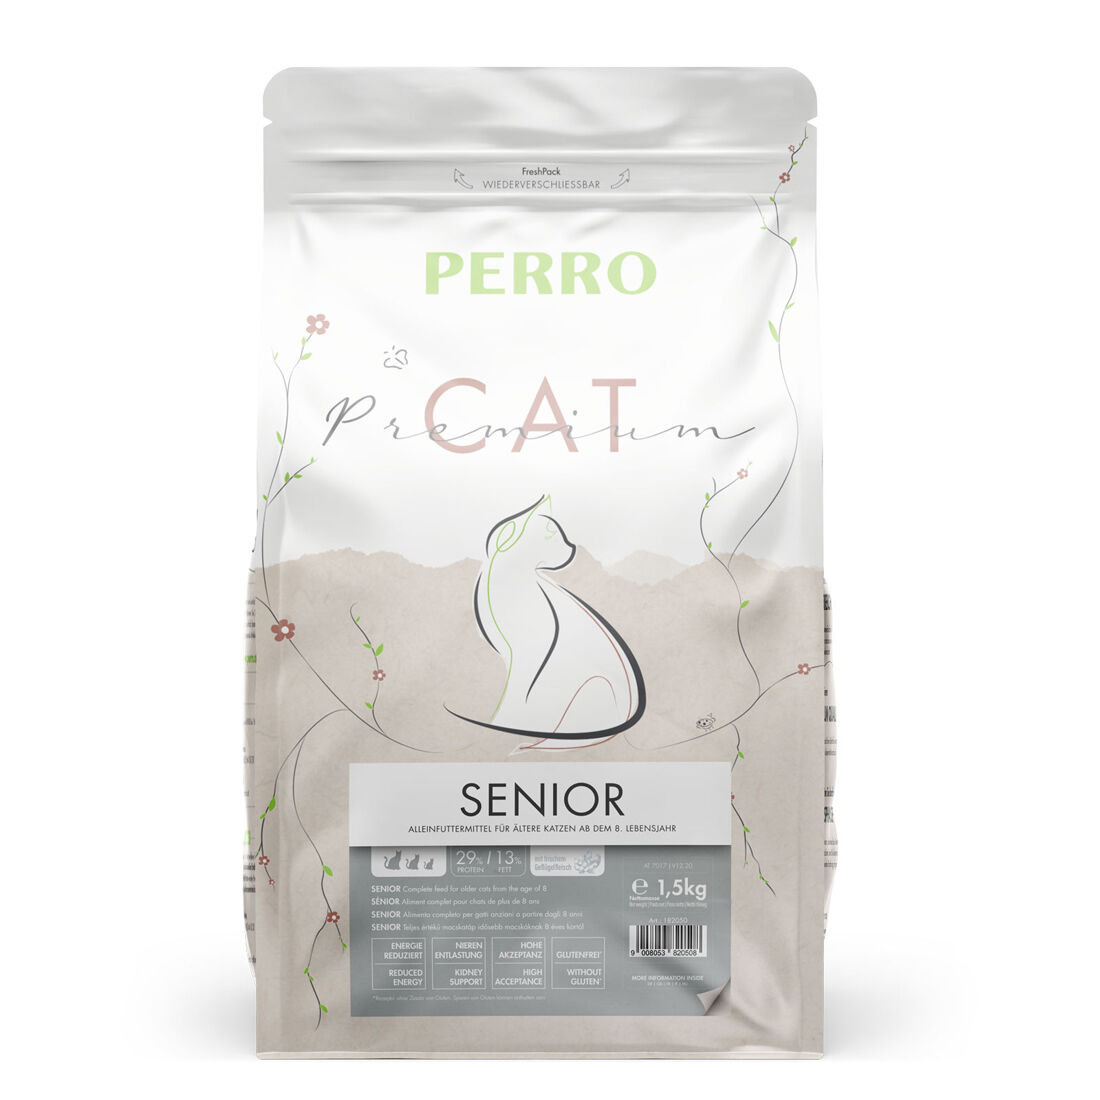 PERRO-Cat-Premium-Senior-trockenfutter-kalorienreduziert-alte-katze-1-5-kg-182050